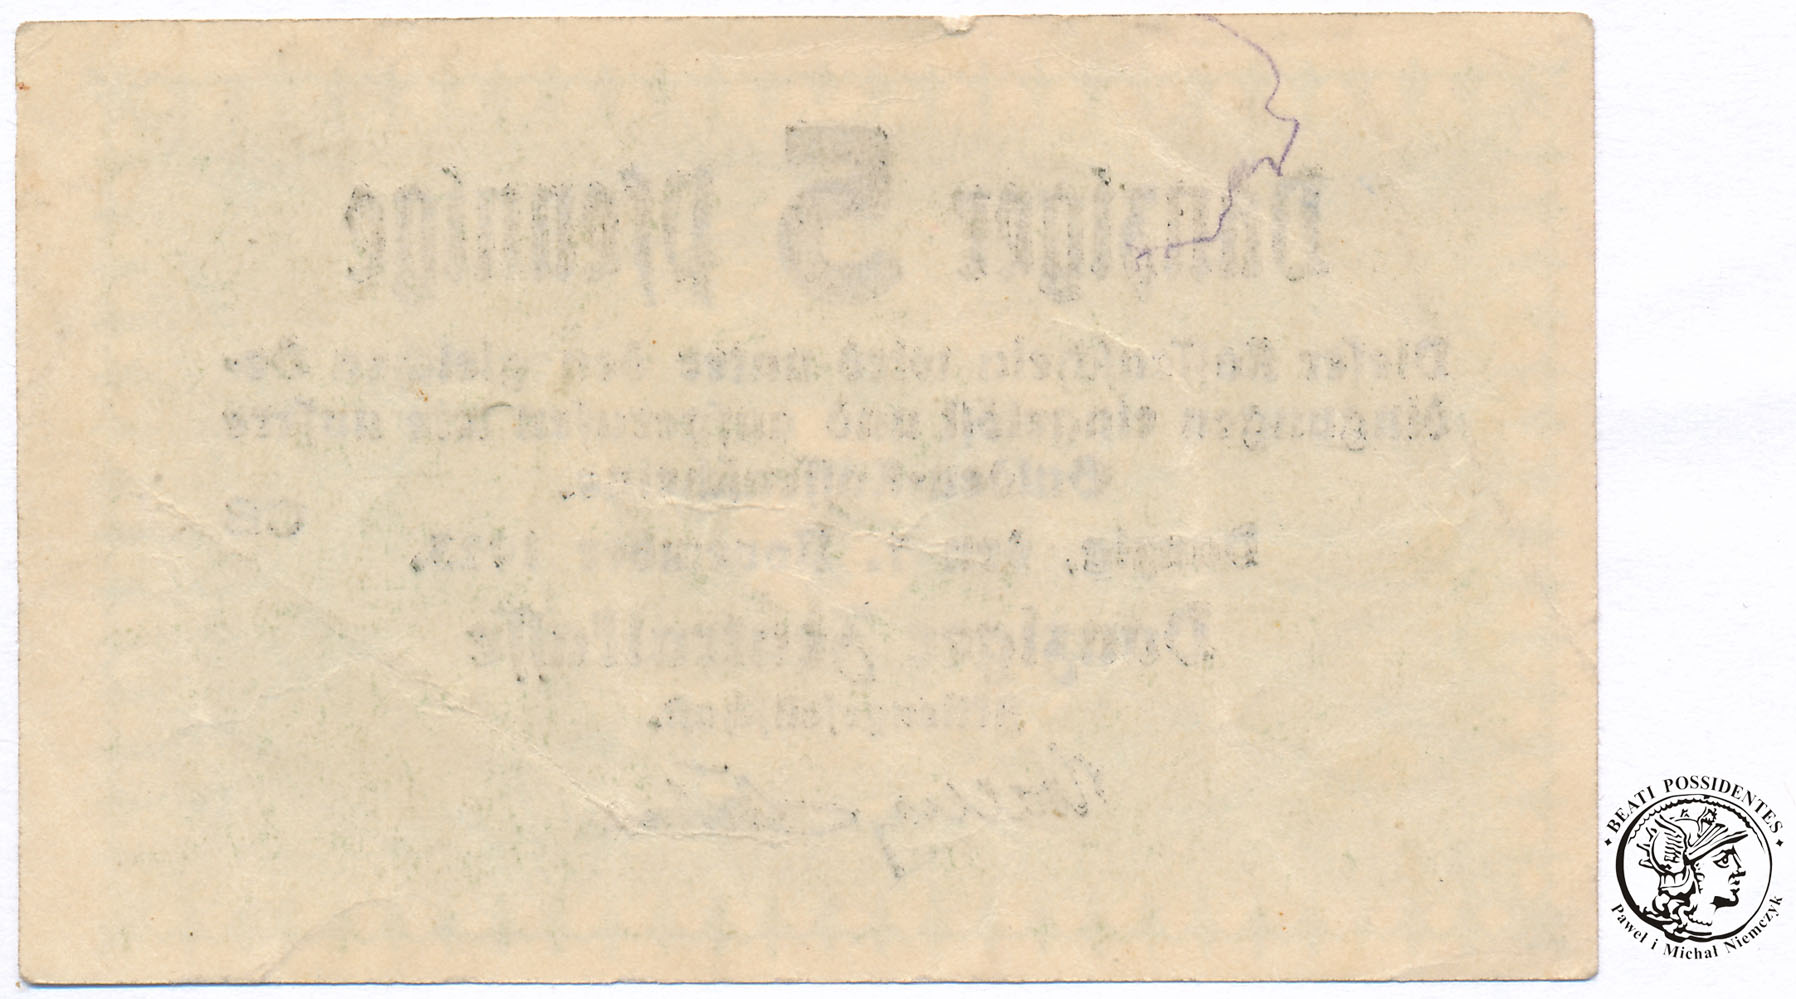 Gdańsk banknot 5 fenigów 1923 st. 2-/3+